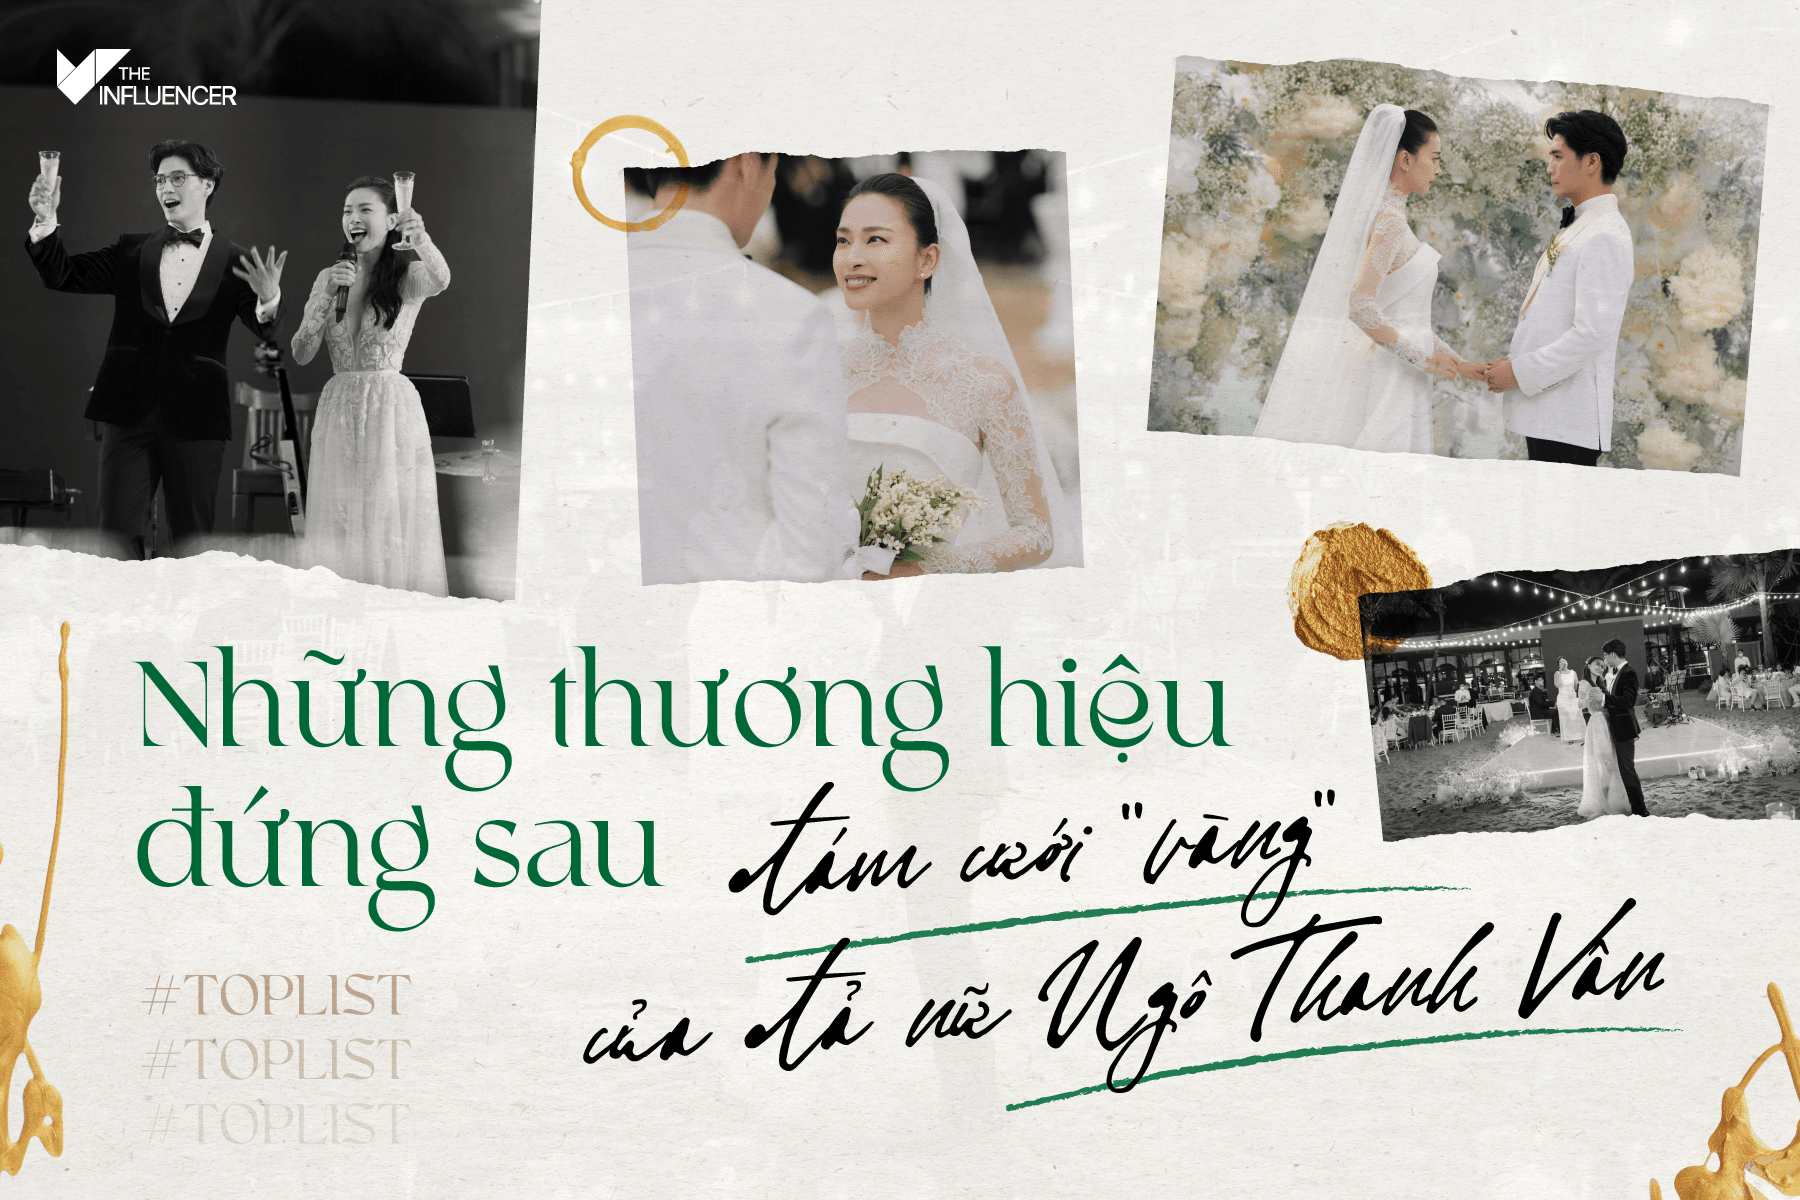 #Toplist: Những thương hiệu đứng sau đám cưới "vàng" của đả nữ Ngô Thanh Vân